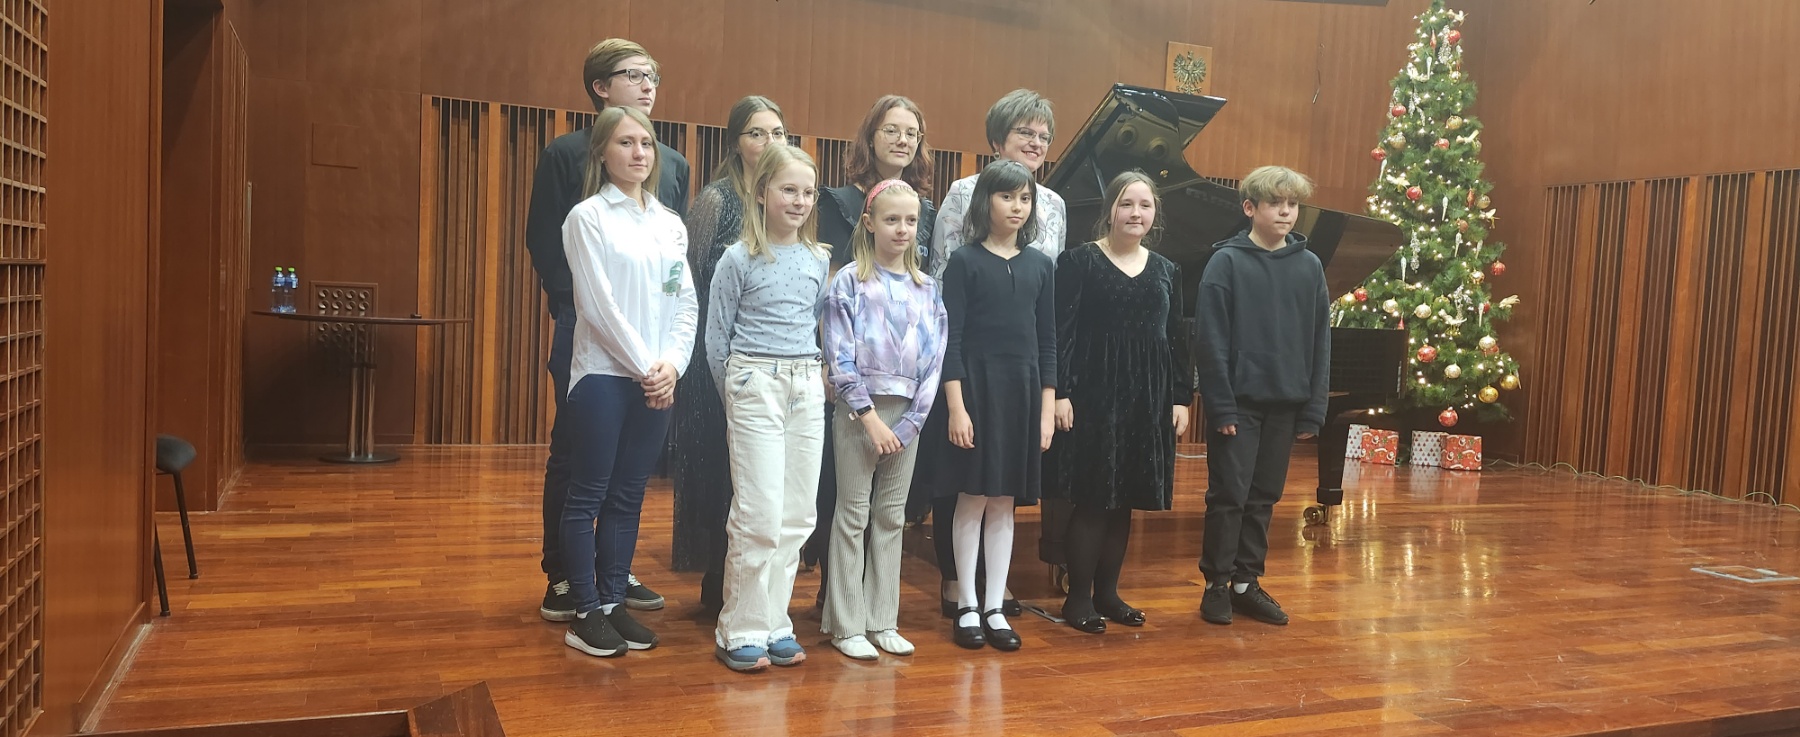 Zdjęcie uczestników warsztatów pianistycznych wraz z prof. Oksaną Rapitą w sali koncertowej szkoły. W tle brązowa scena, fortepian oraz choinka.